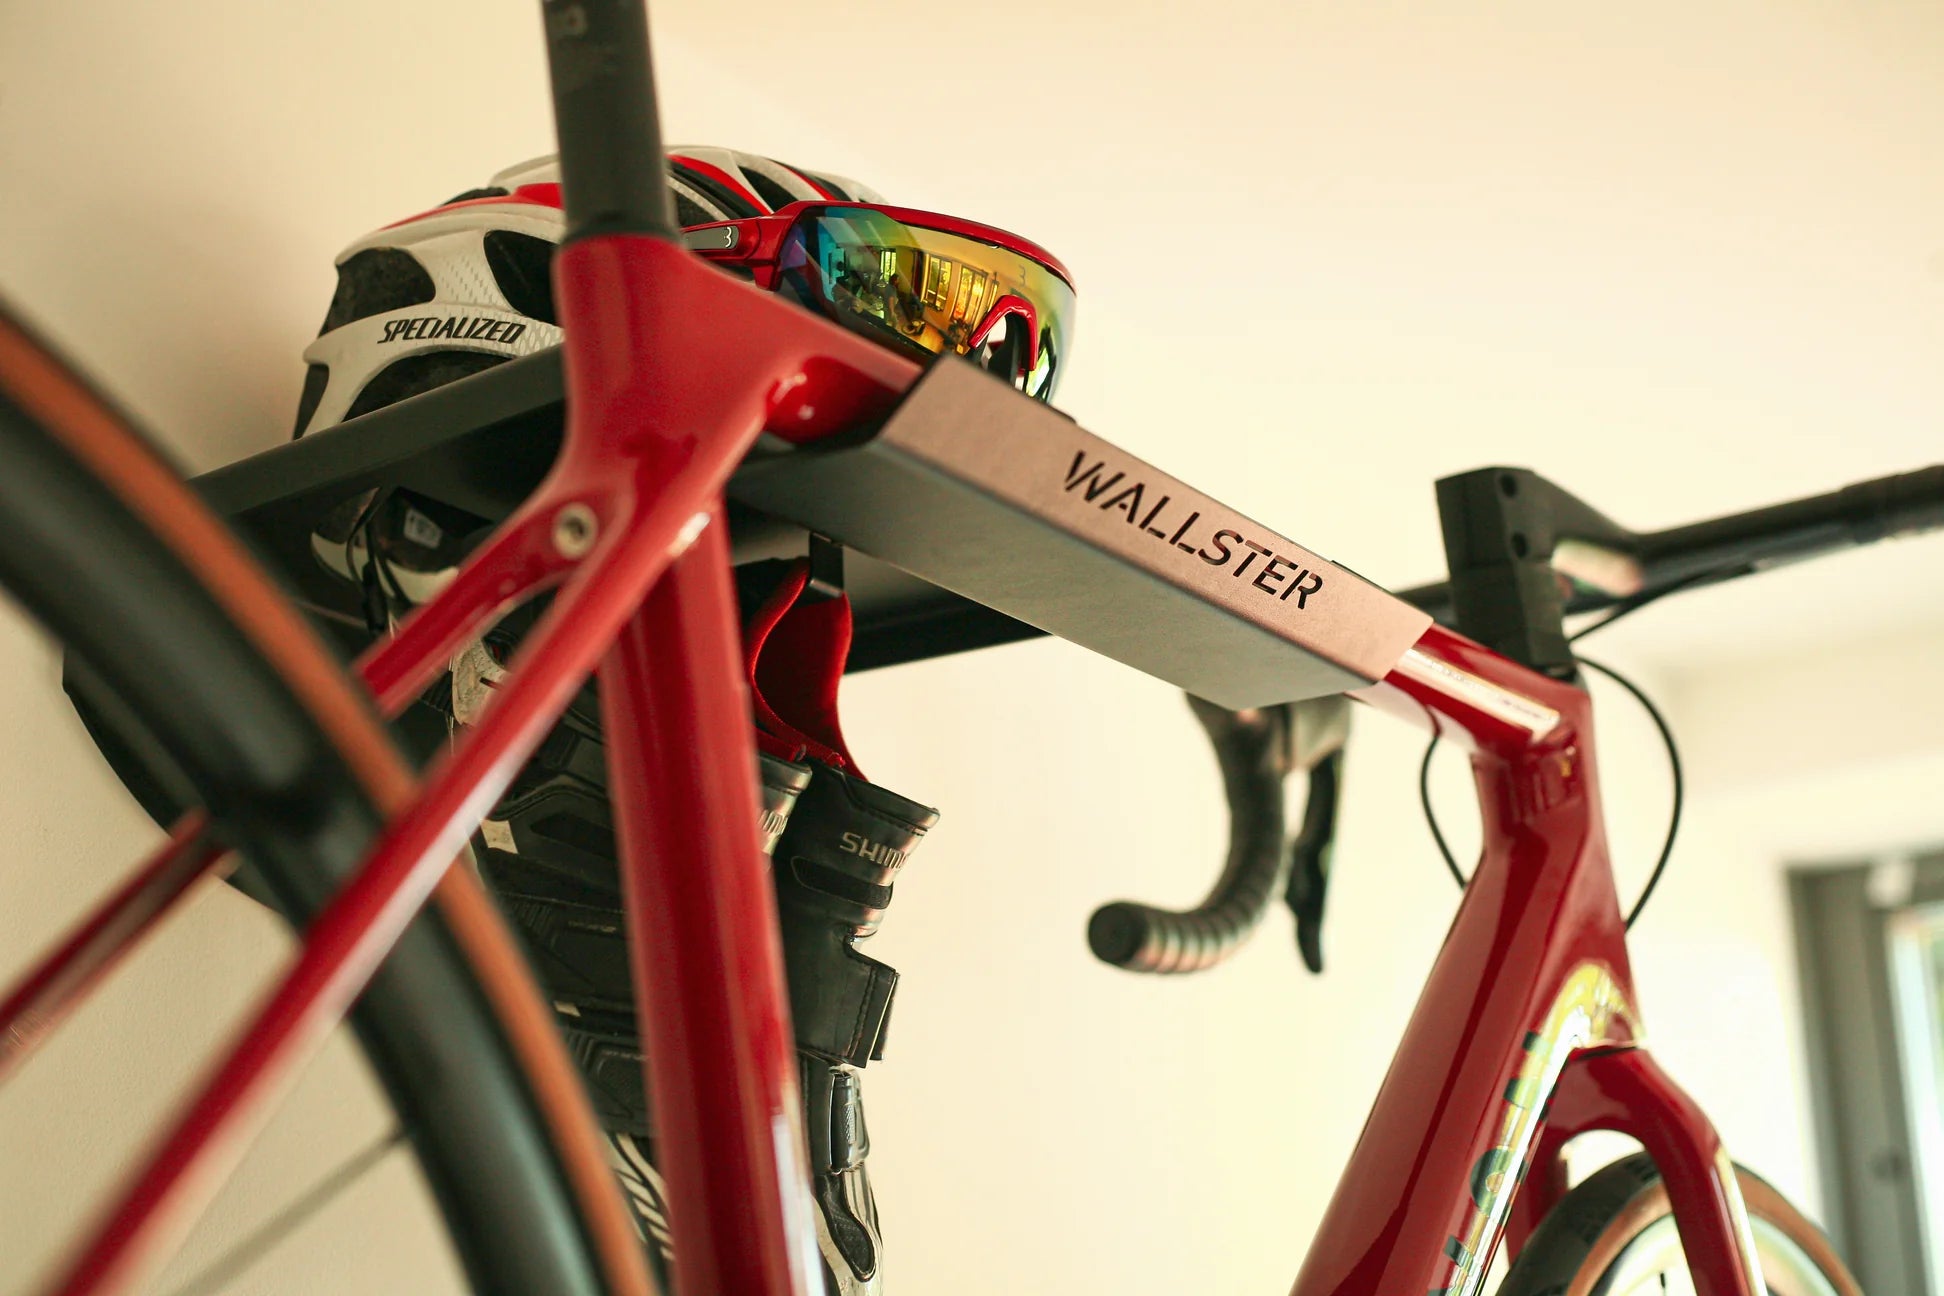 Hoe hang ik mijn fiets aan muur? Fietsbeugel van Wallster is betrouwbaar, ijzersterk en artistiek!